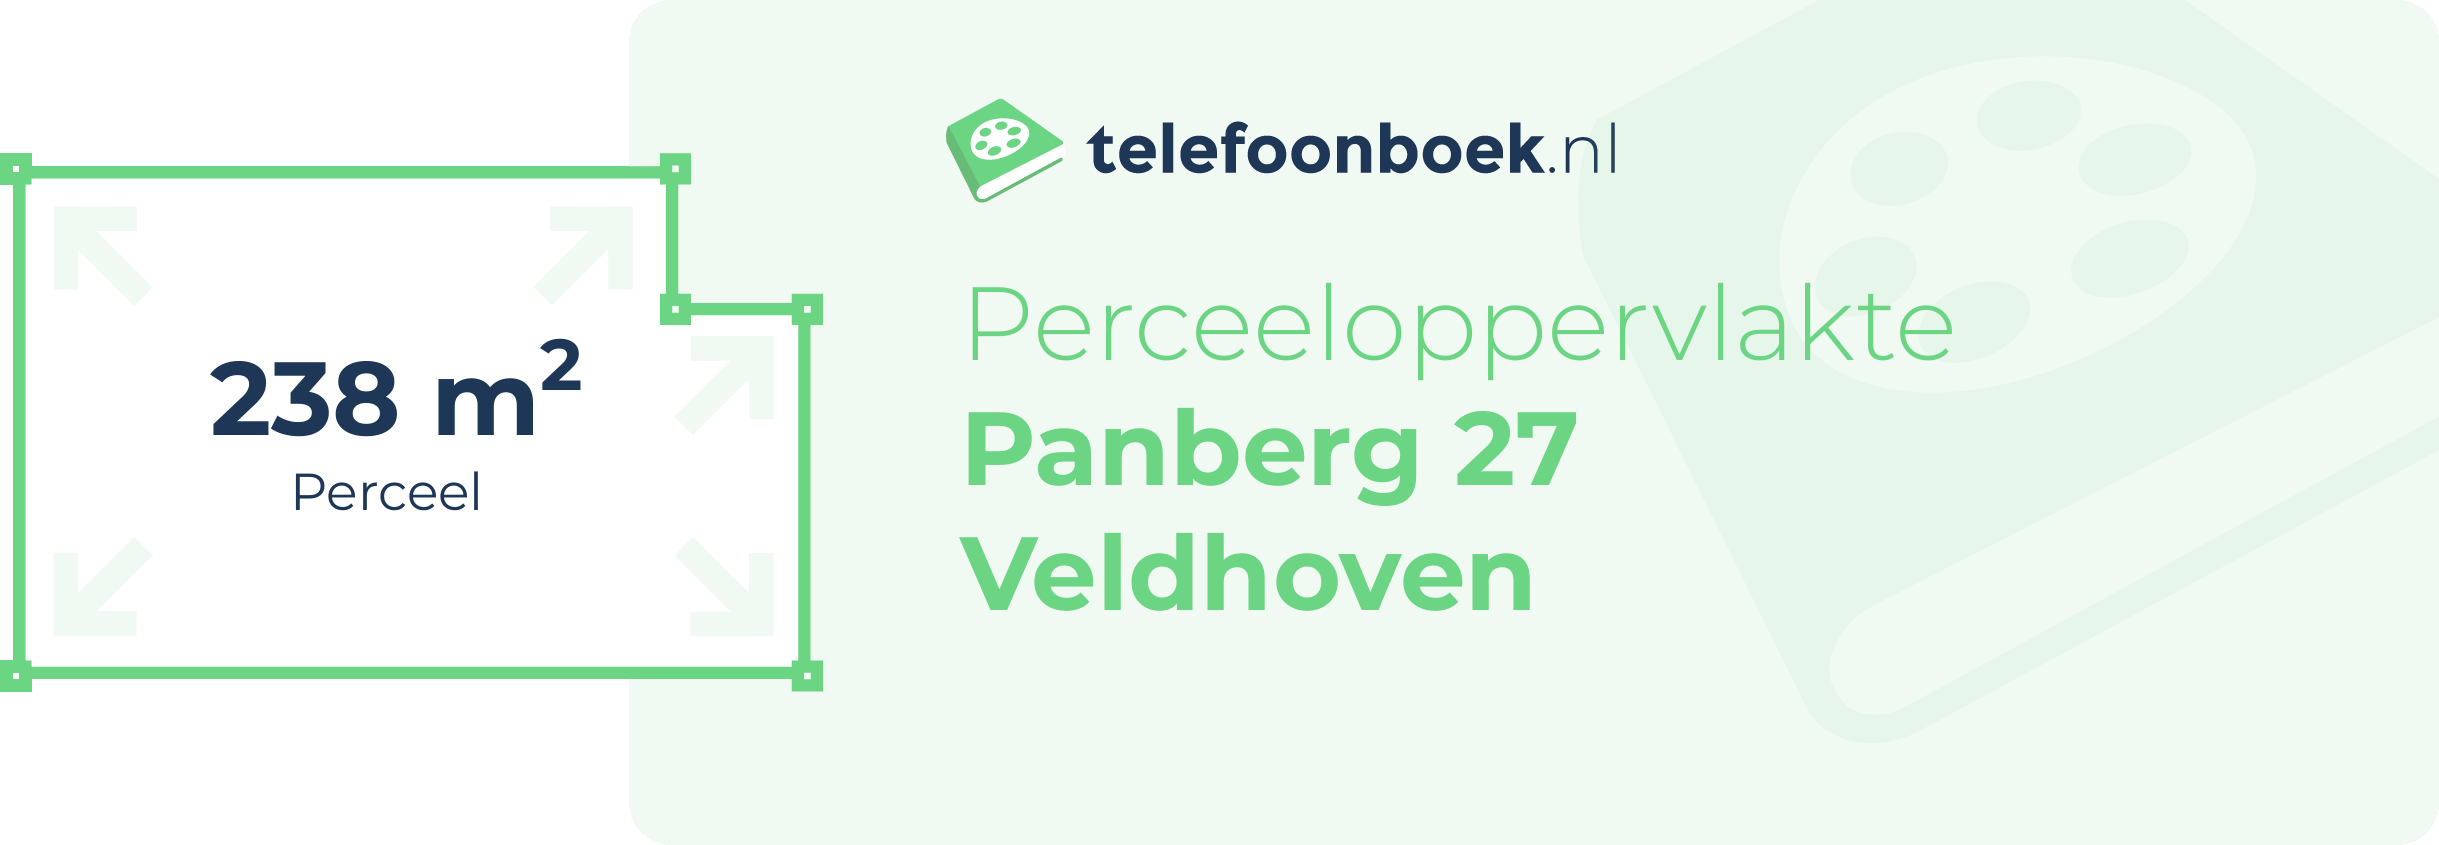 Perceeloppervlakte Panberg 27 Veldhoven